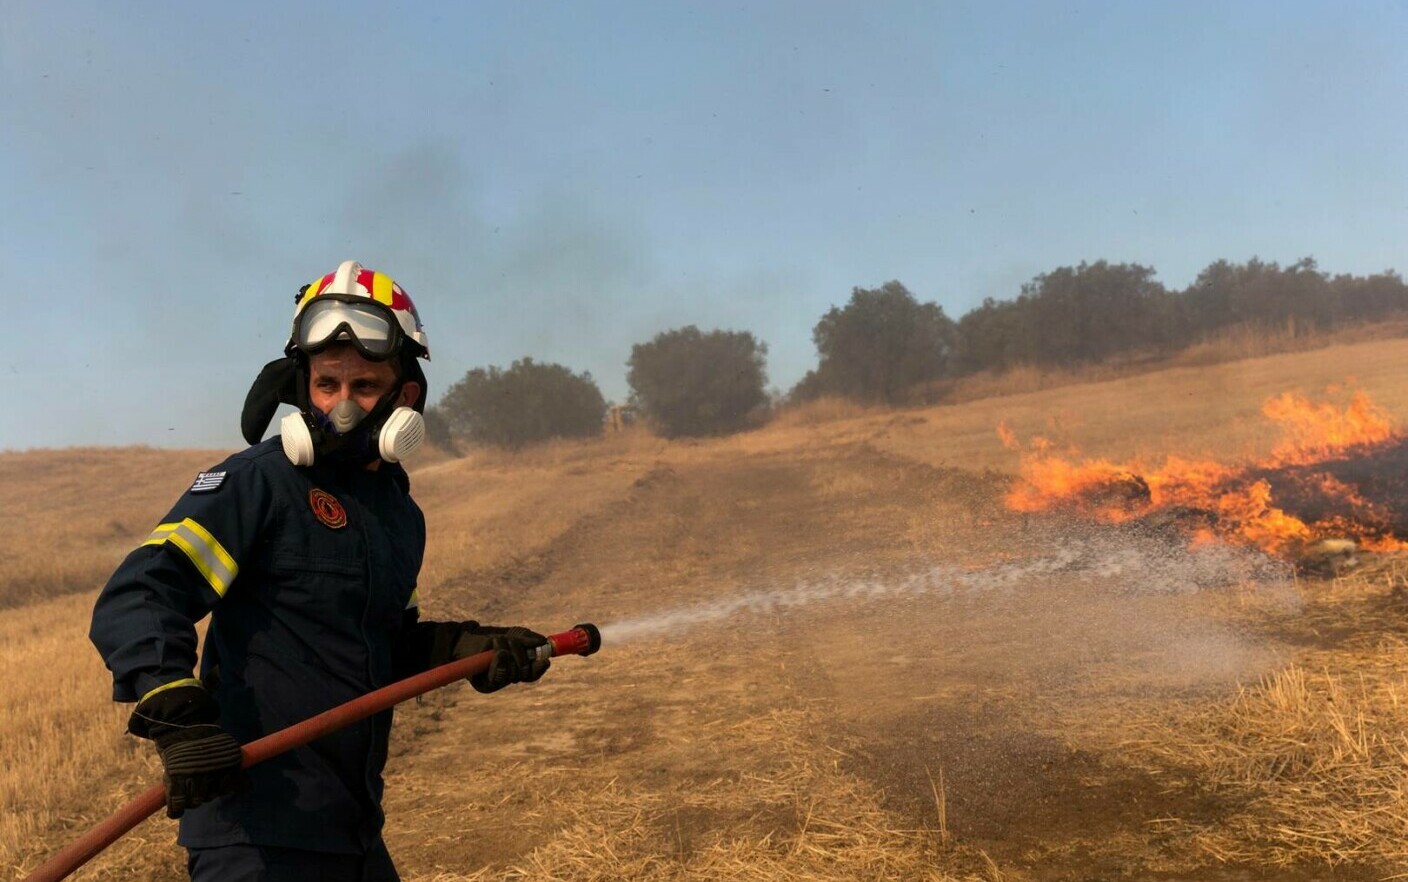 Έλληνες πυροσβέστες, ένα βήμα πριν από τις καταστροφικές πυρκαγιές.  Η Ελλάδα διανύει περίοδο έντονου καύσωνα